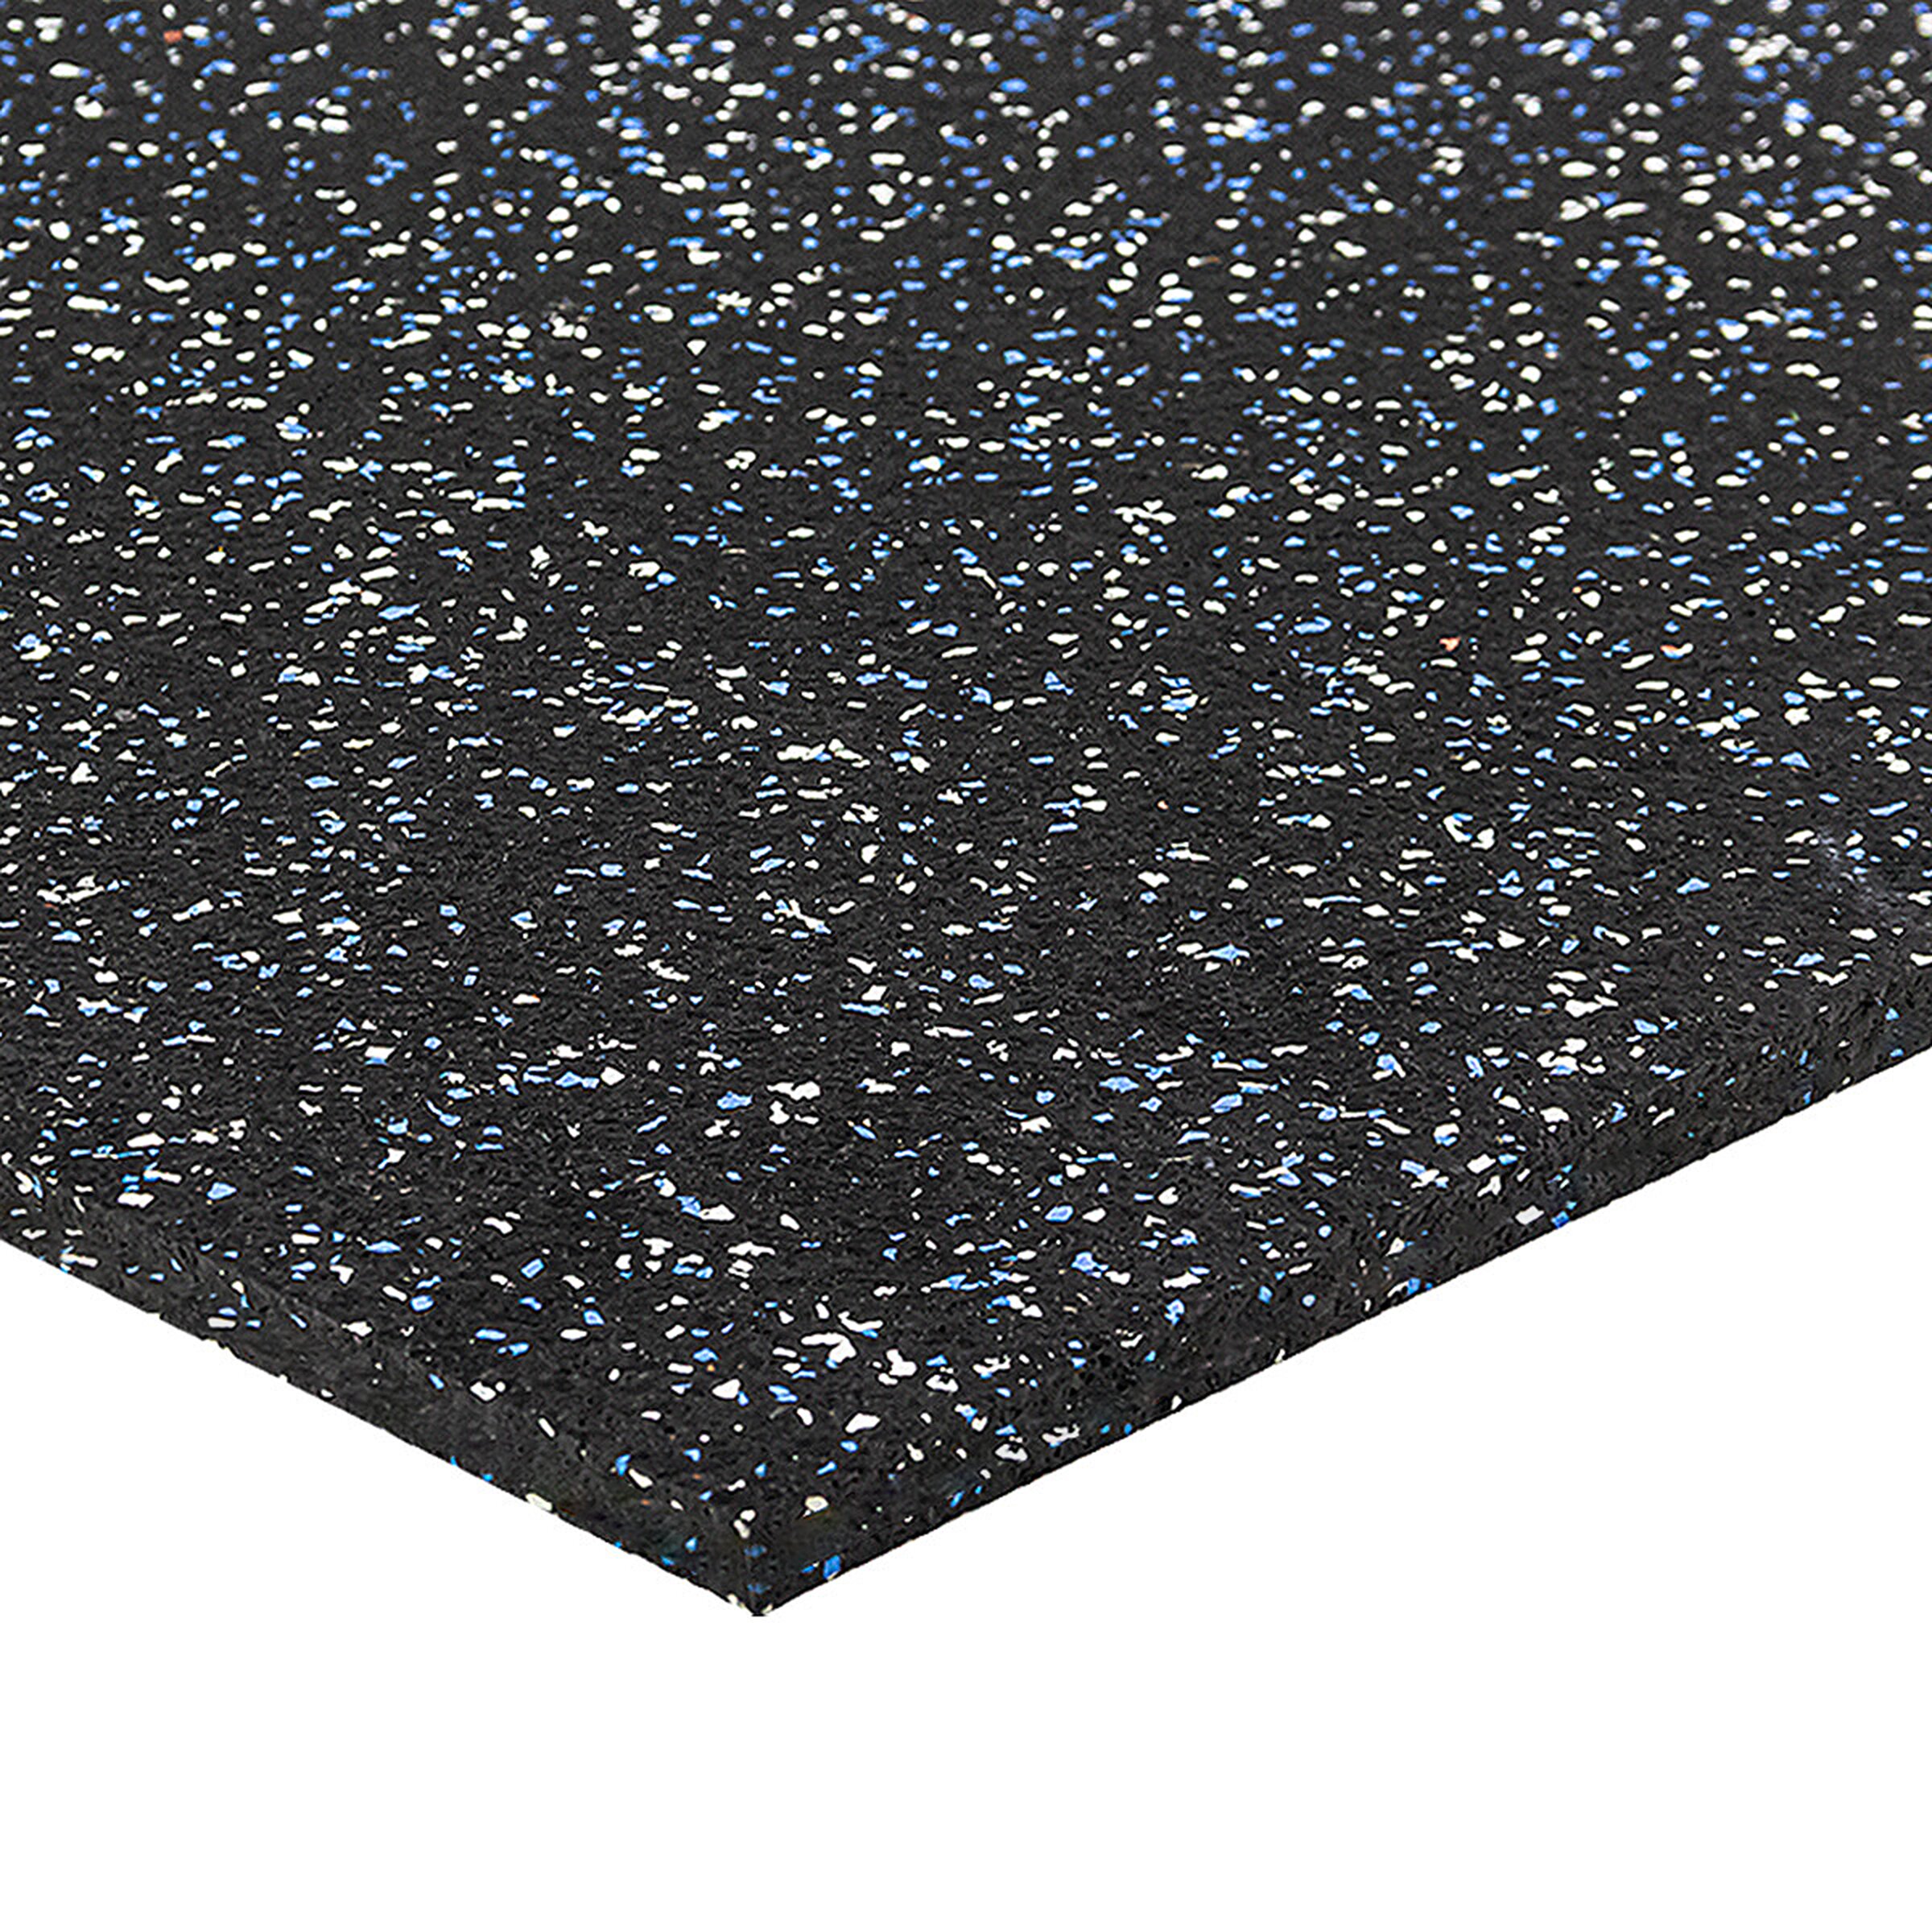 Černo-bílo-modrá gumová modulová puzzle dlažba FLOMA FitFlo SF1050 - délka 100 cm, šířka 100 cm, výška 1 cm